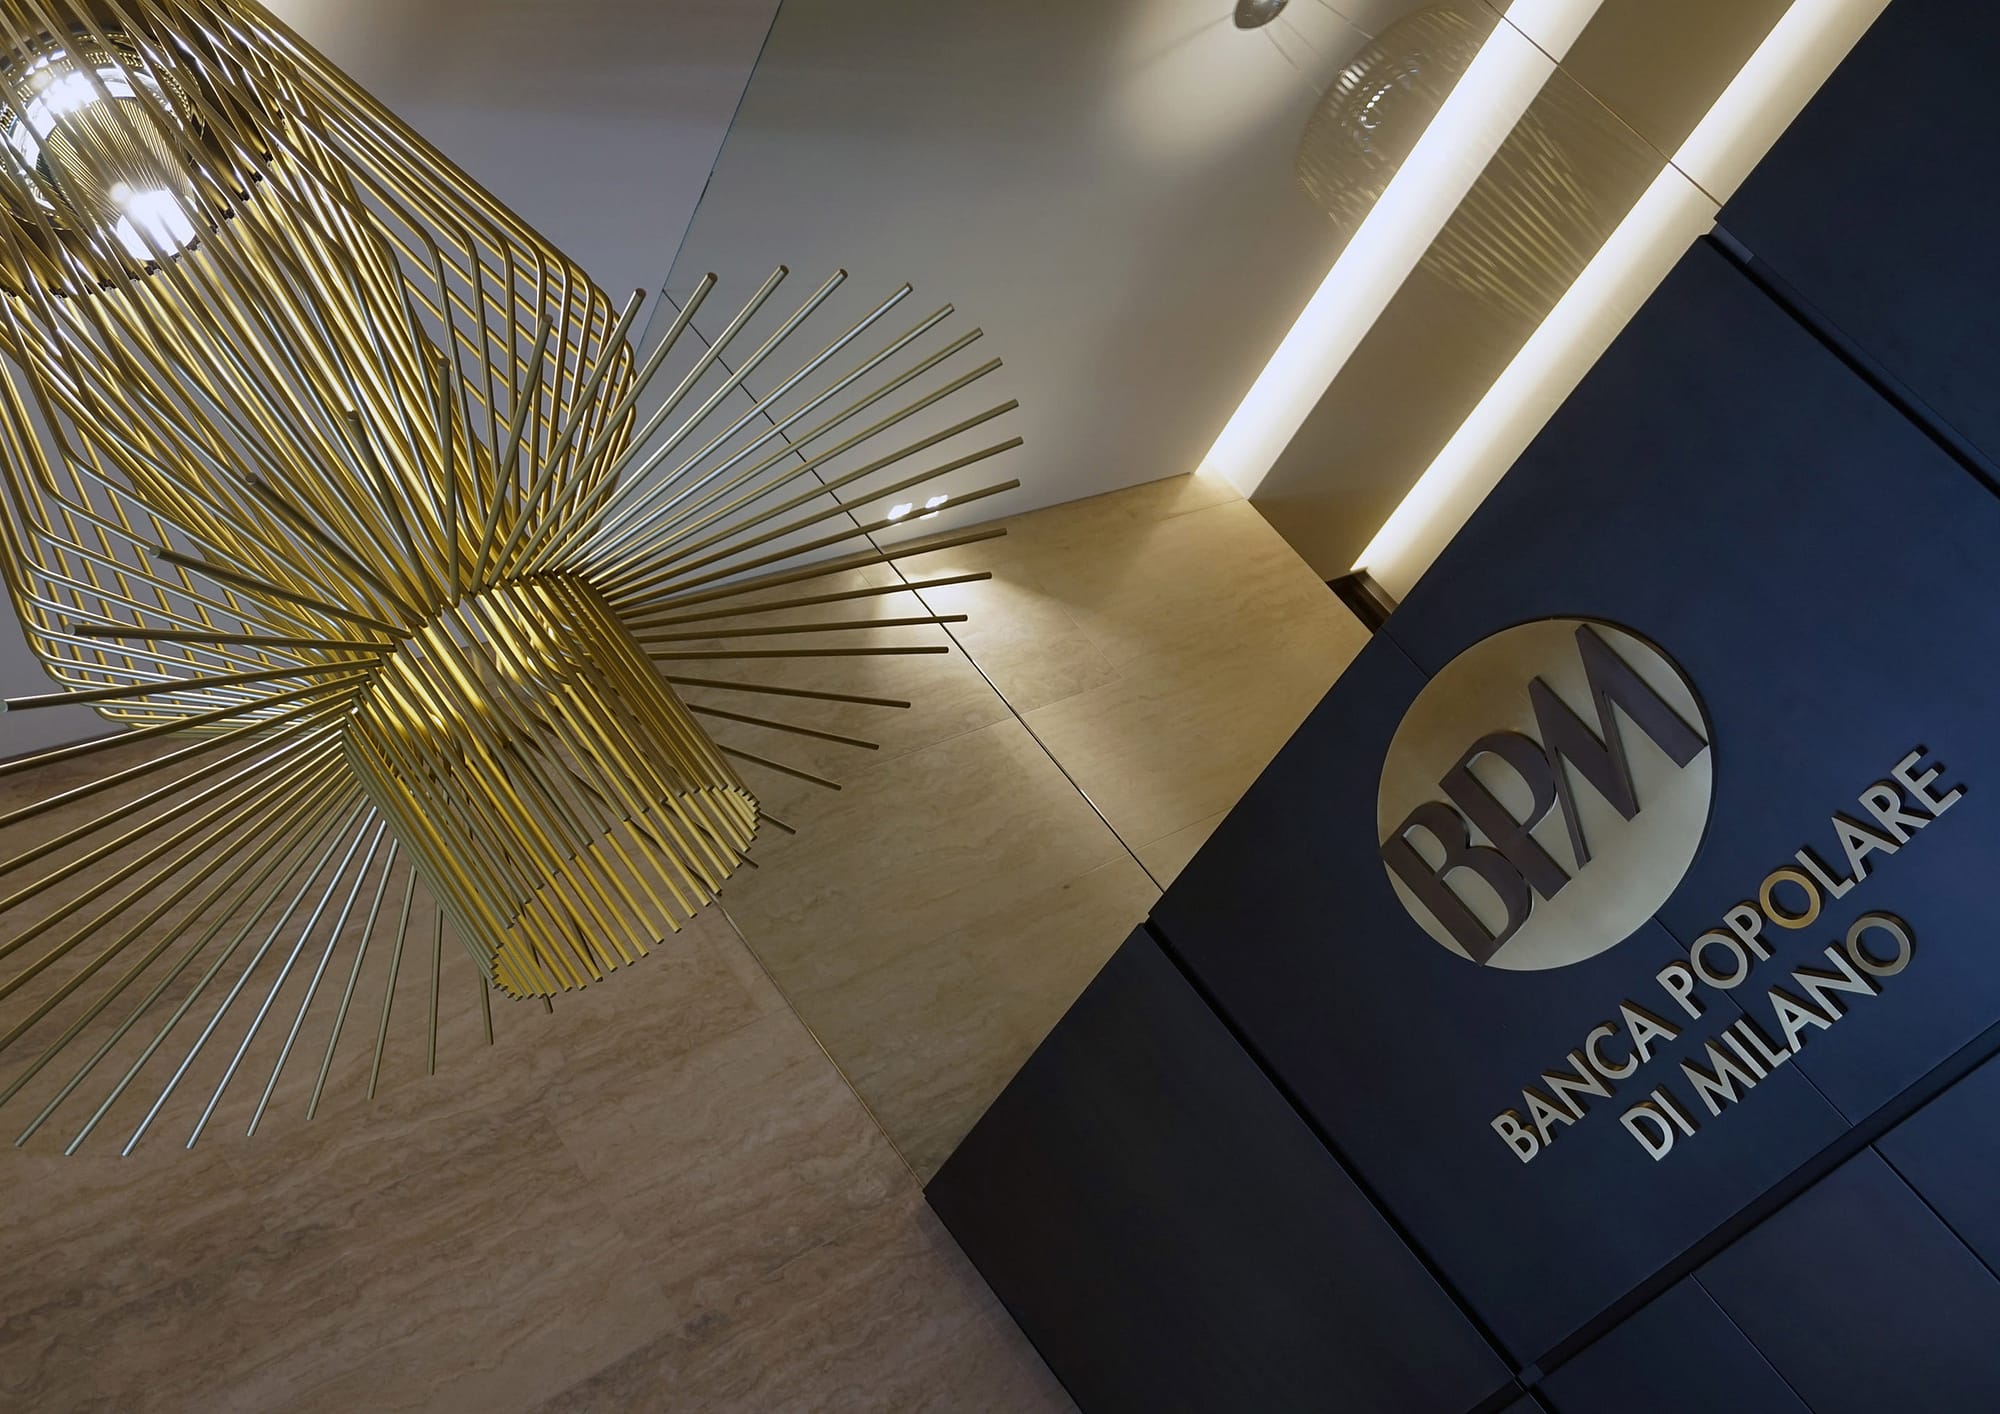 Banco BPM Foyer, vista dettaglio su marchio e lampadario Allegretto